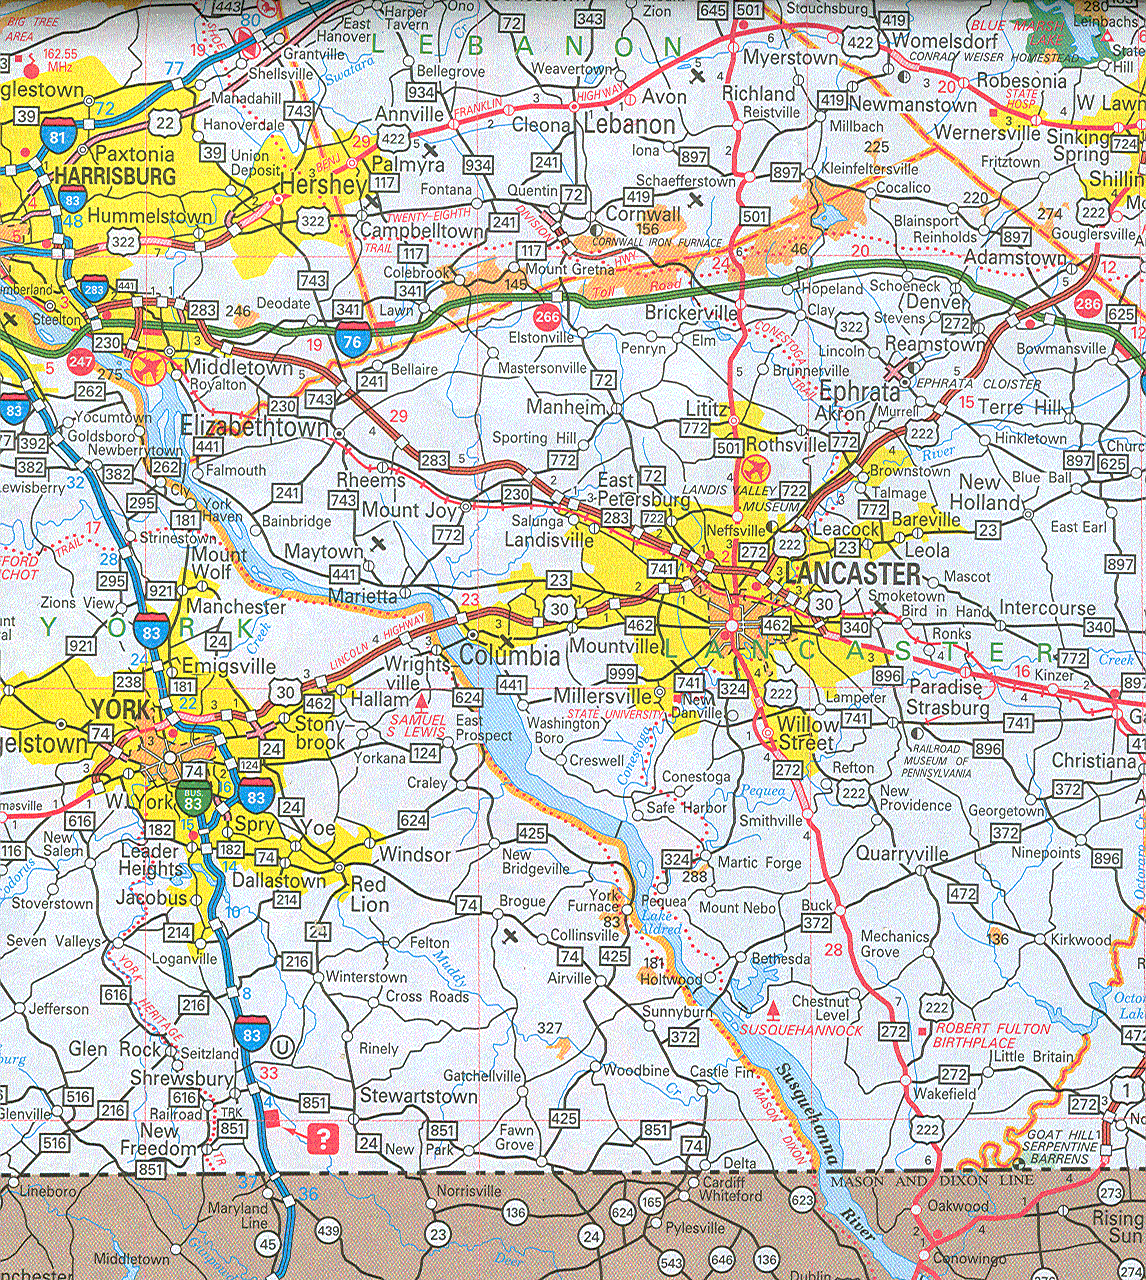 Course: Maps & GIS